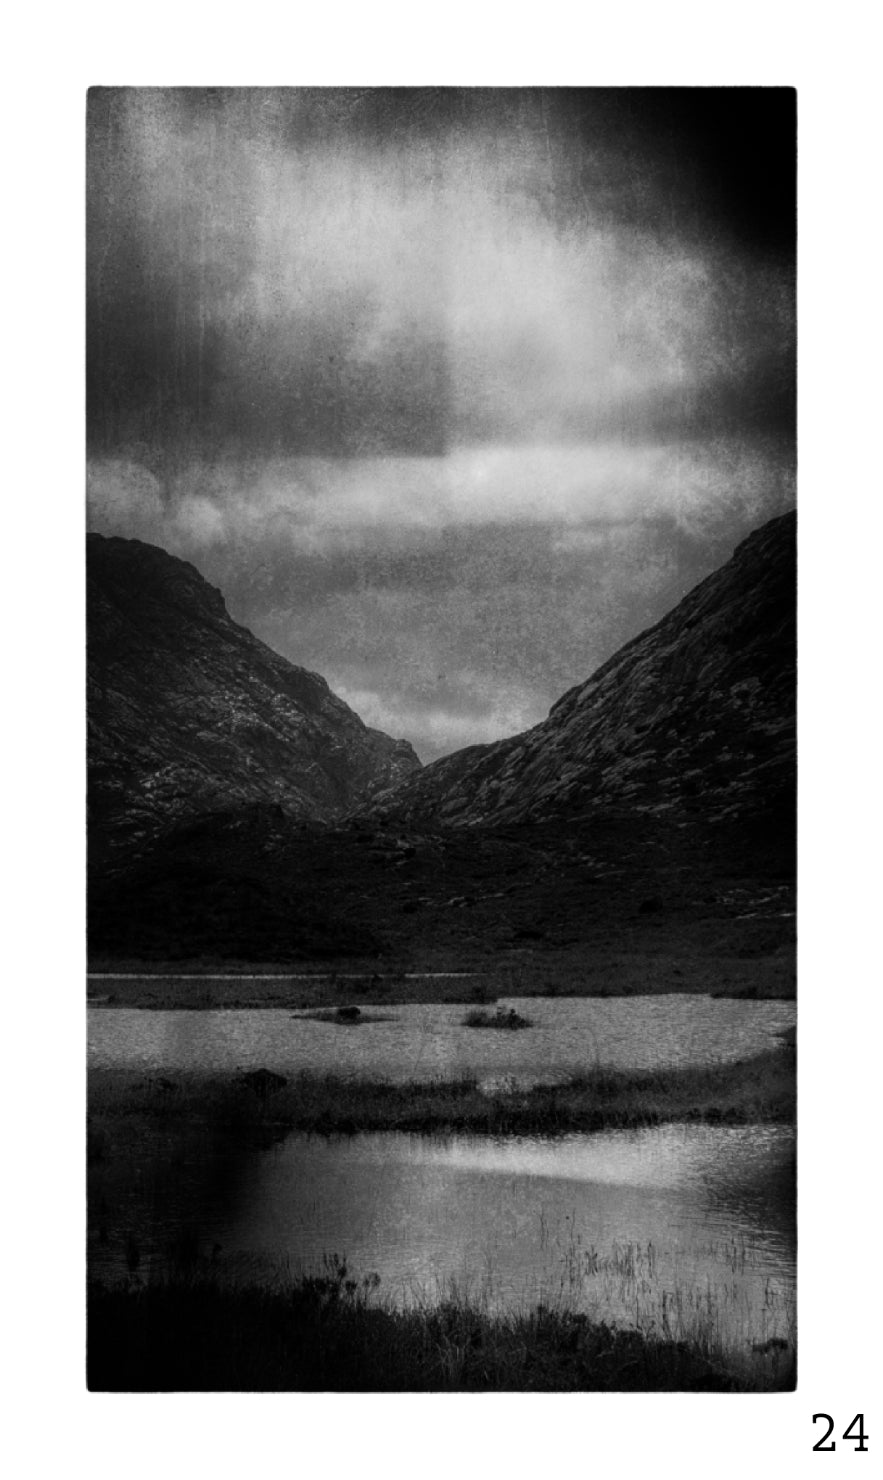 Guy Dickinson A Shadow Passes A2 print (SKYE_24) at Bard Scotland.